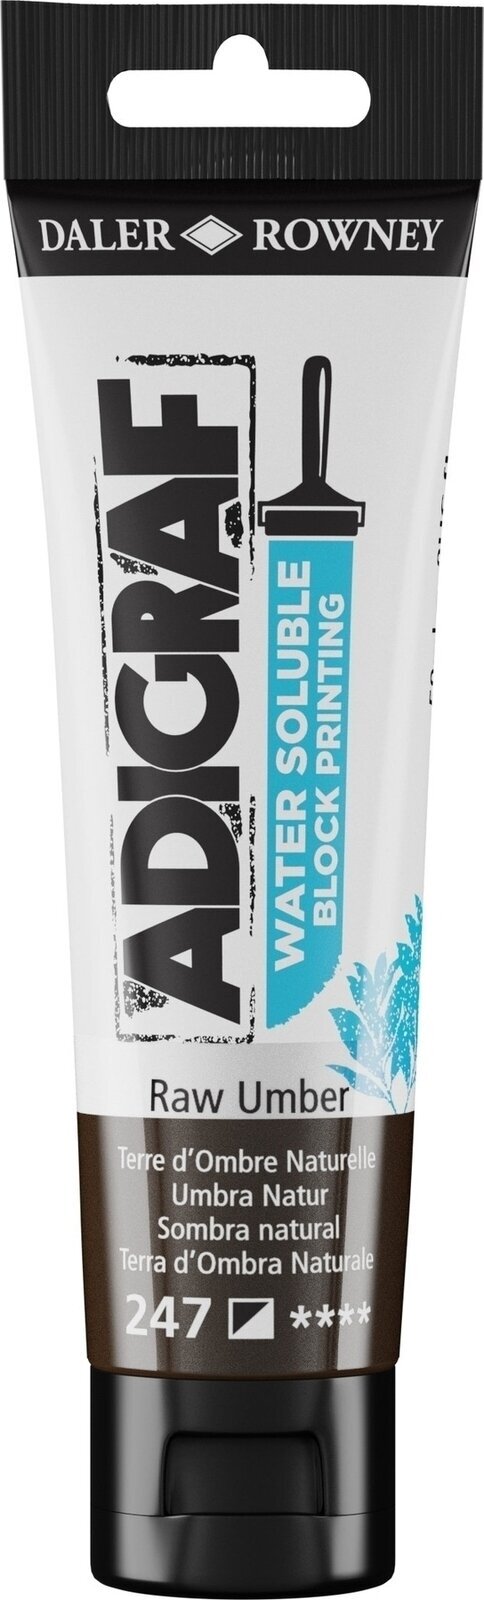 Verf voor linosnede Daler Rowney Adigraf Block Printing Water Soluble Colour Verf voor linosnede Raw Umber 59 ml